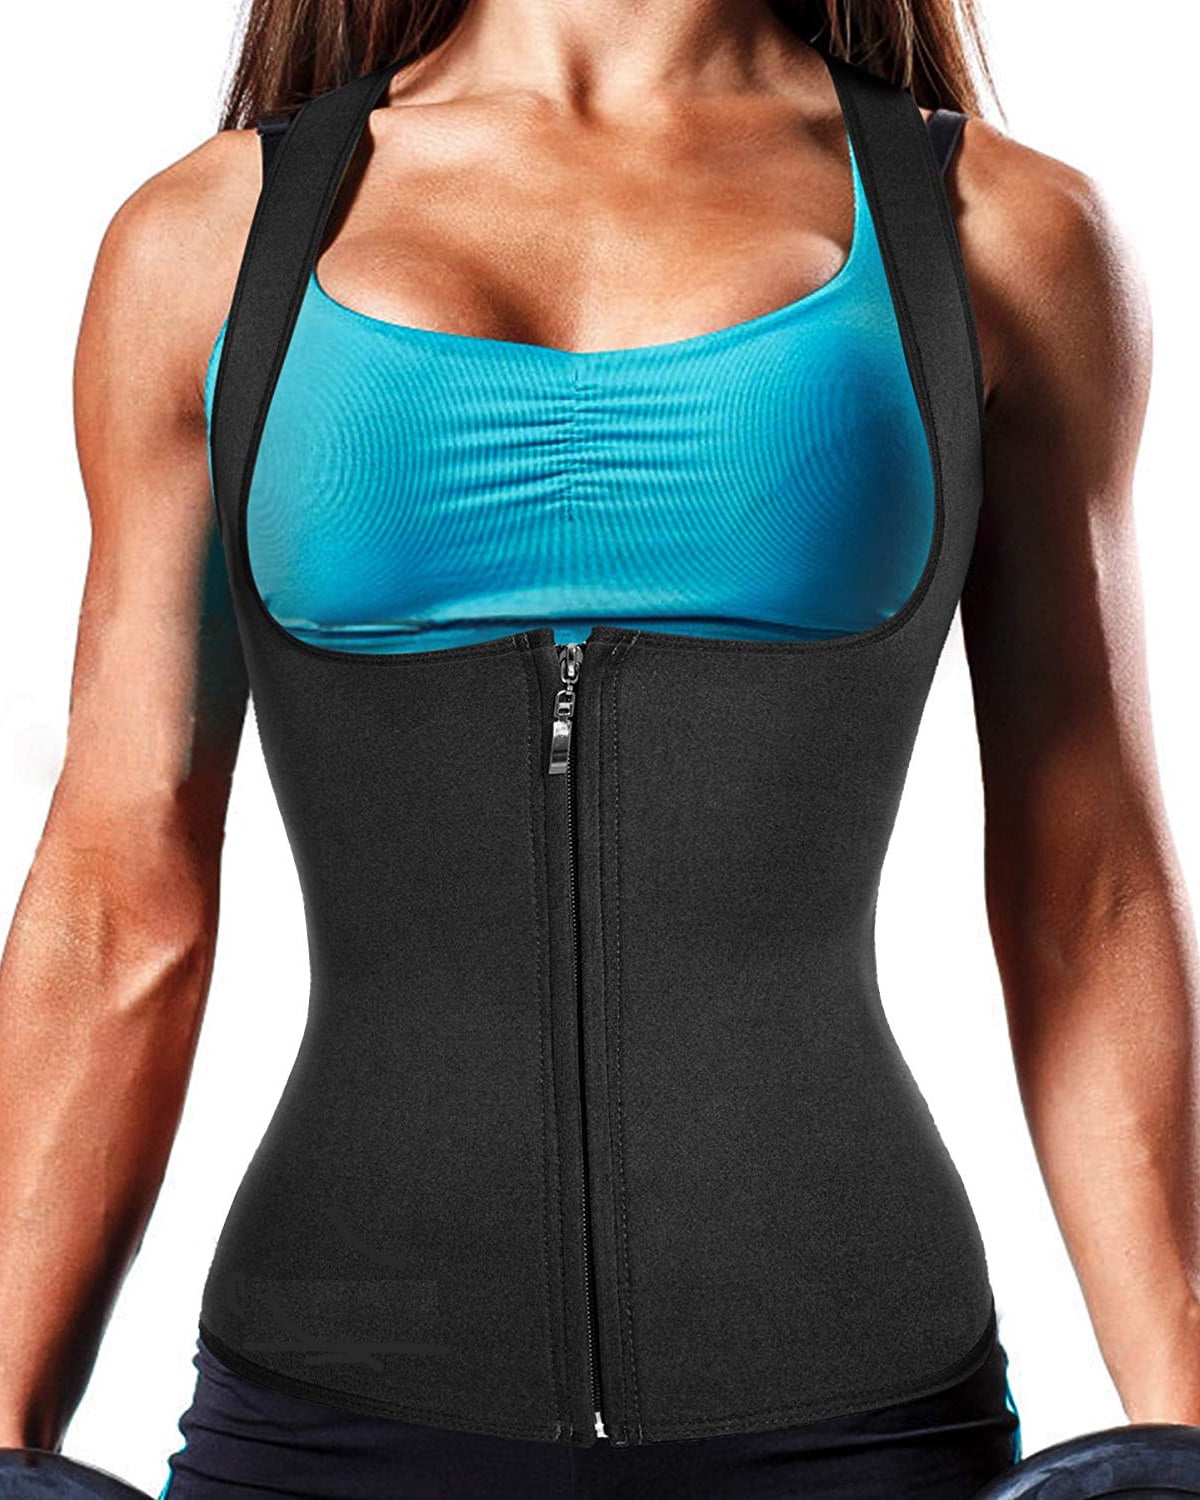 Women Sweat Vest GYM Sauna Suit Tank Top Neoprene Vest Body Shaper Waist Trainer